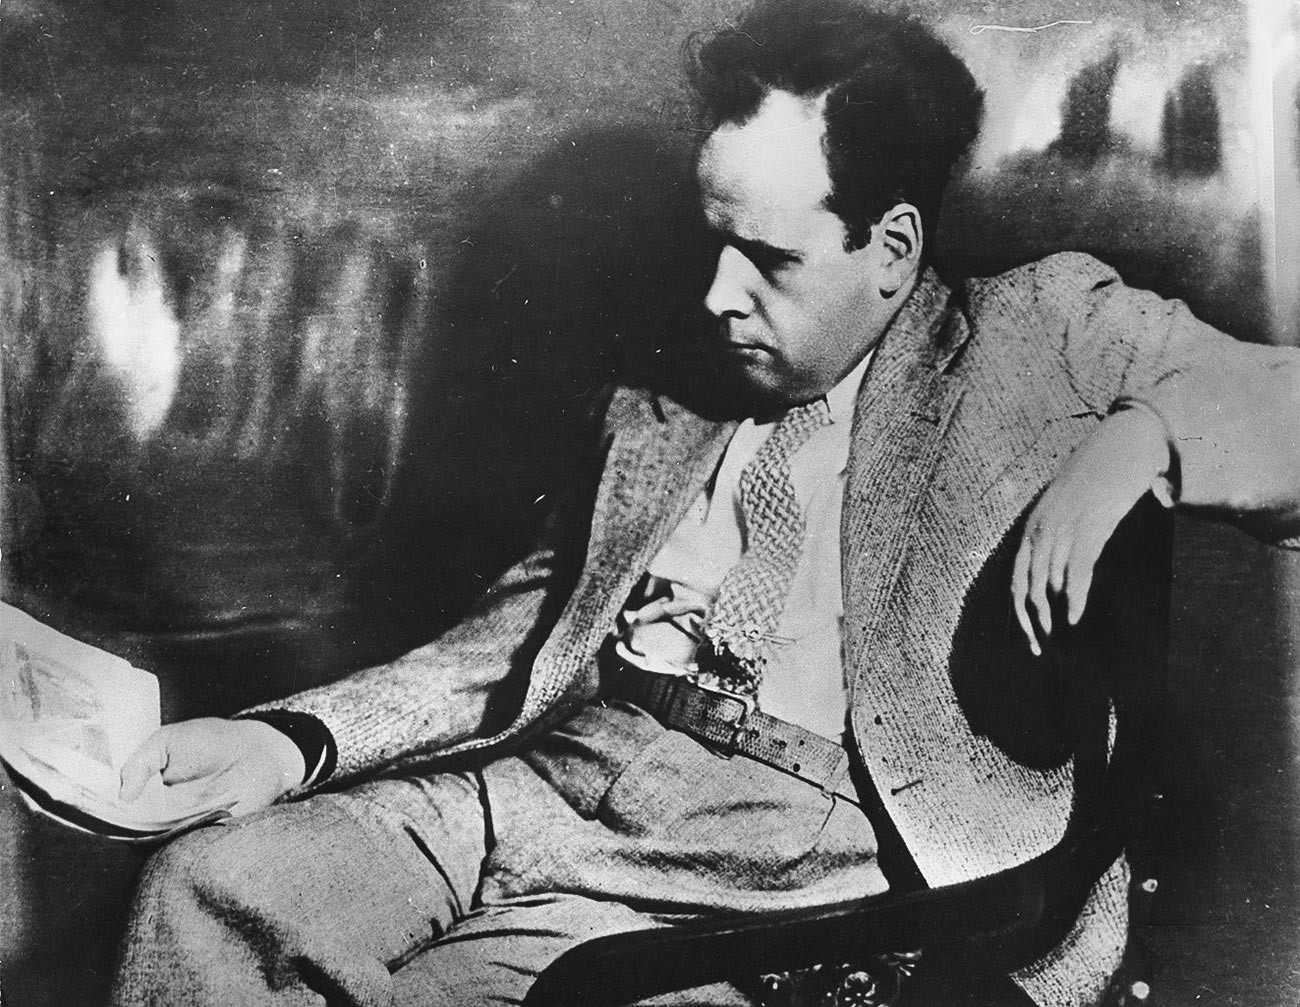 Legendary Soviet movie director Sergei Eizenstein, 1930s